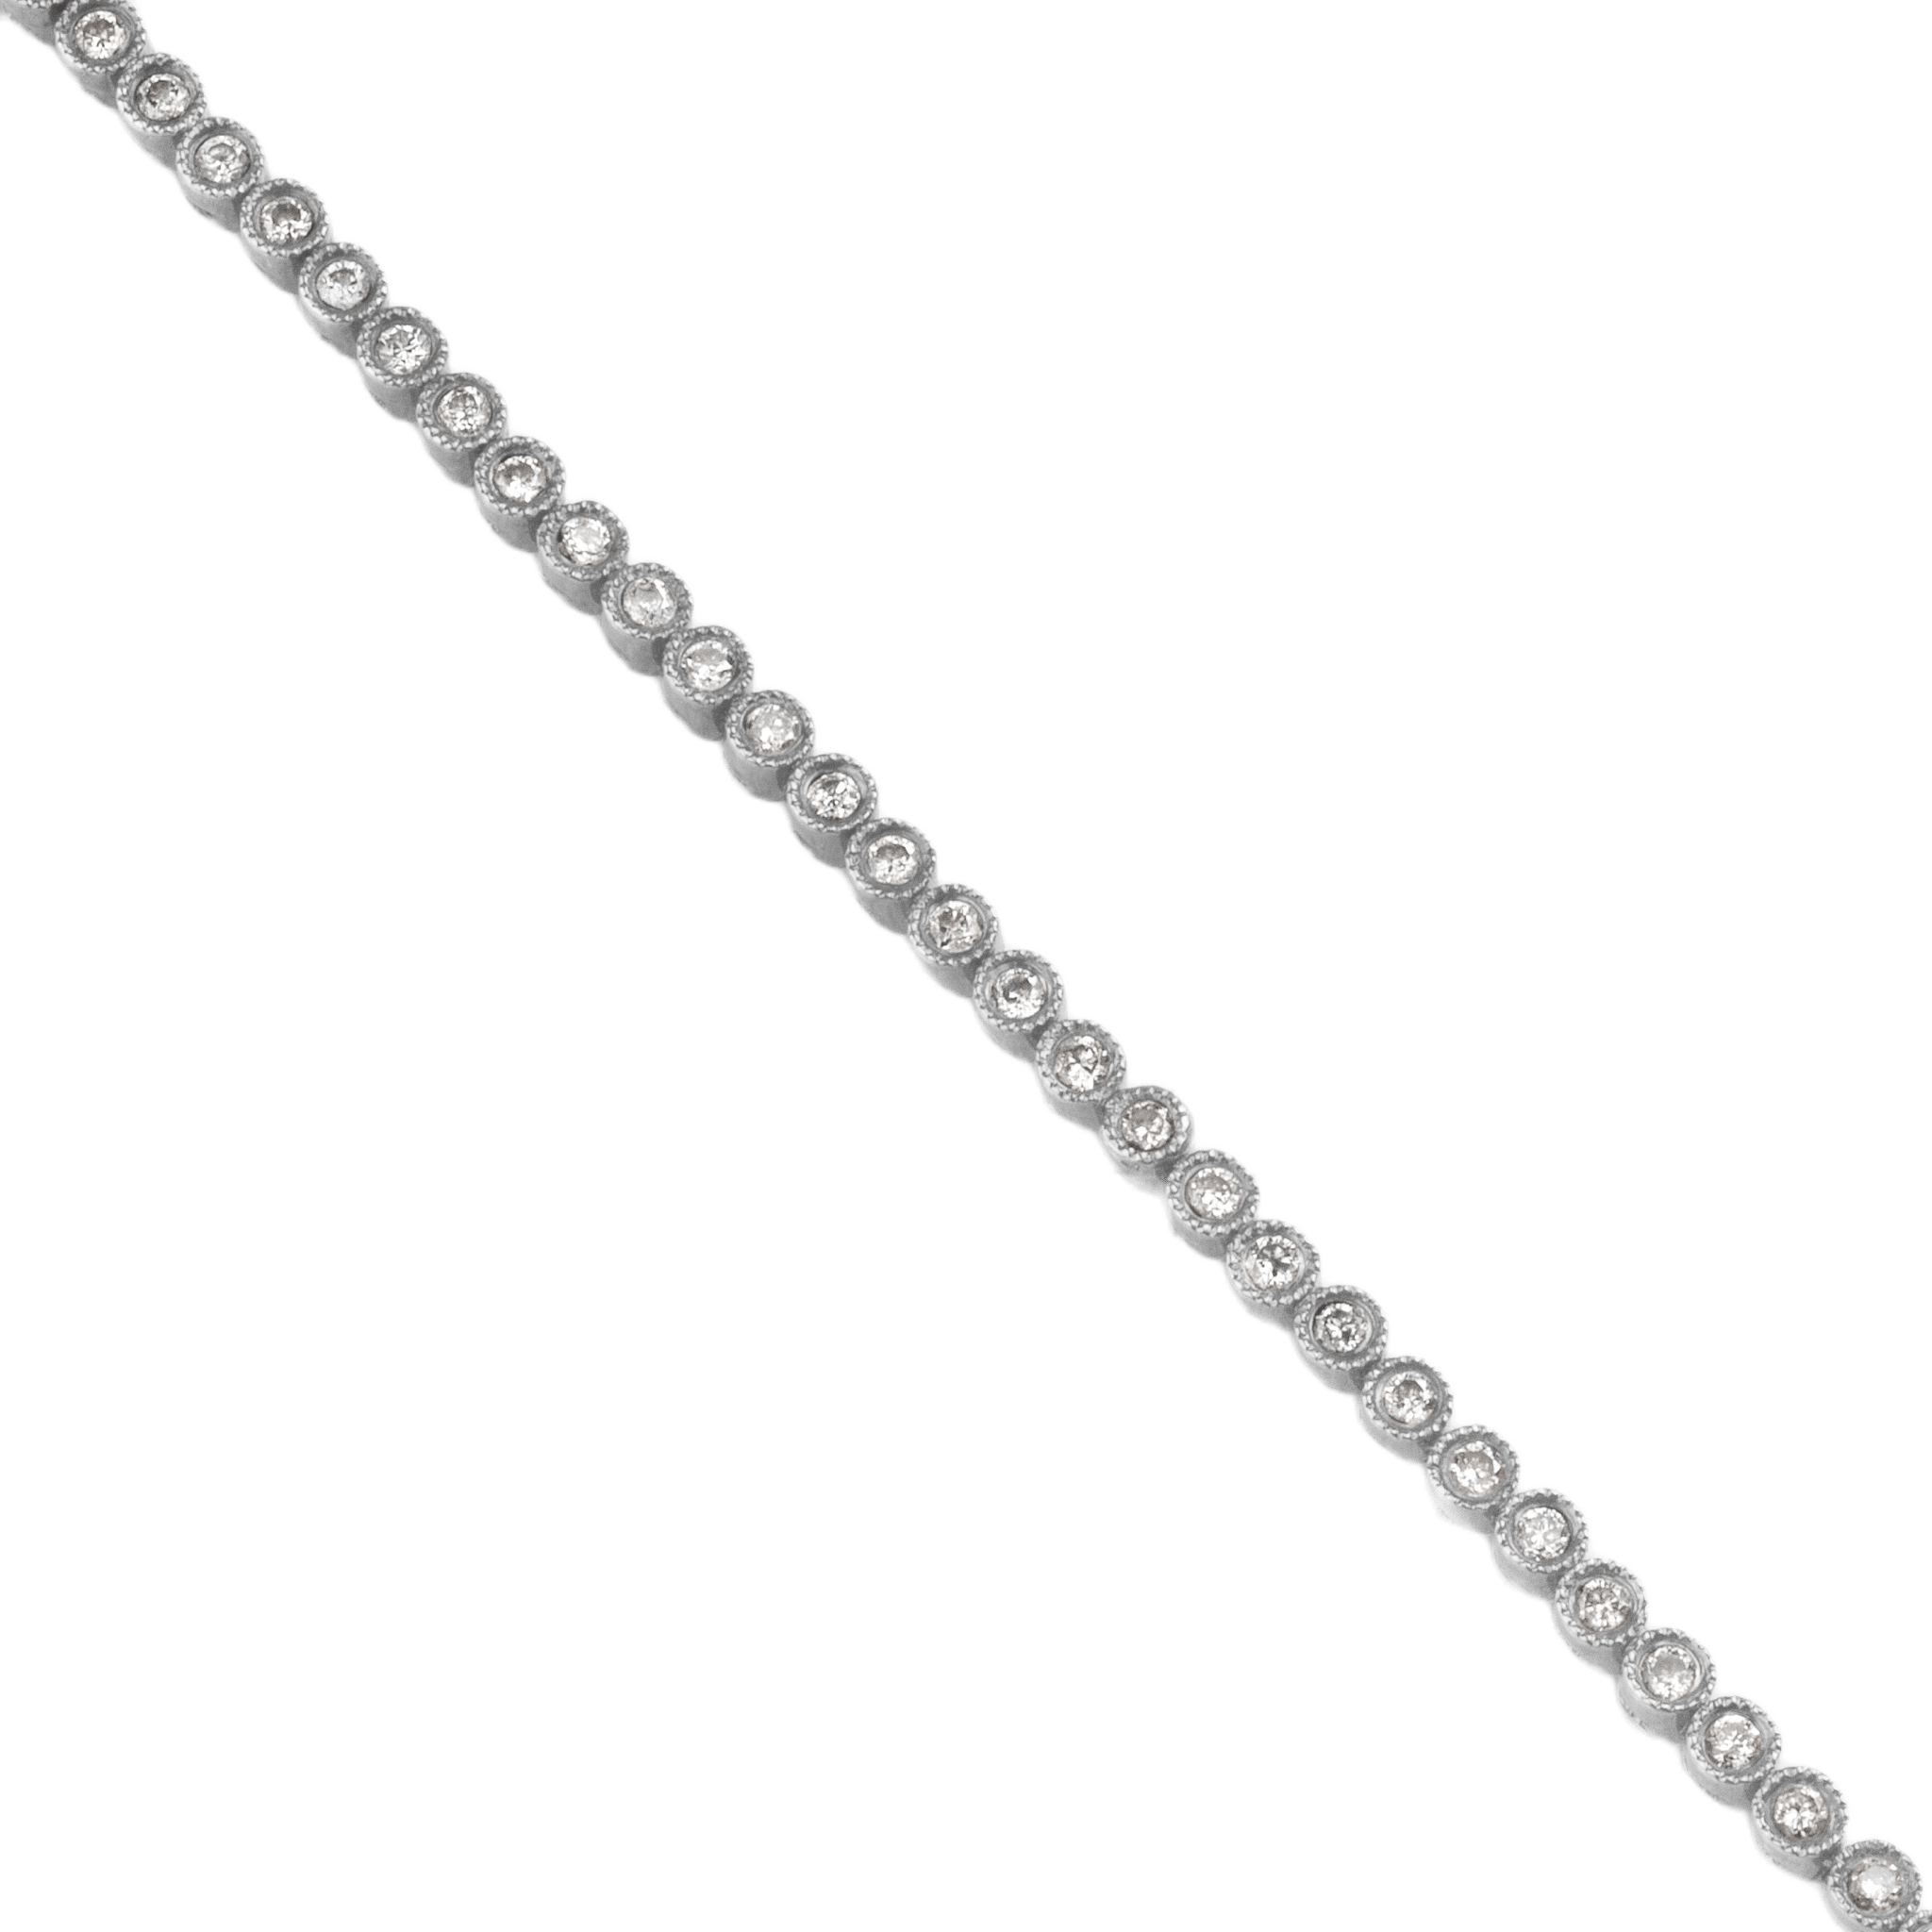 Diamond Bezel Tennis Bracelet - Bracelets - Leviev Diamonds